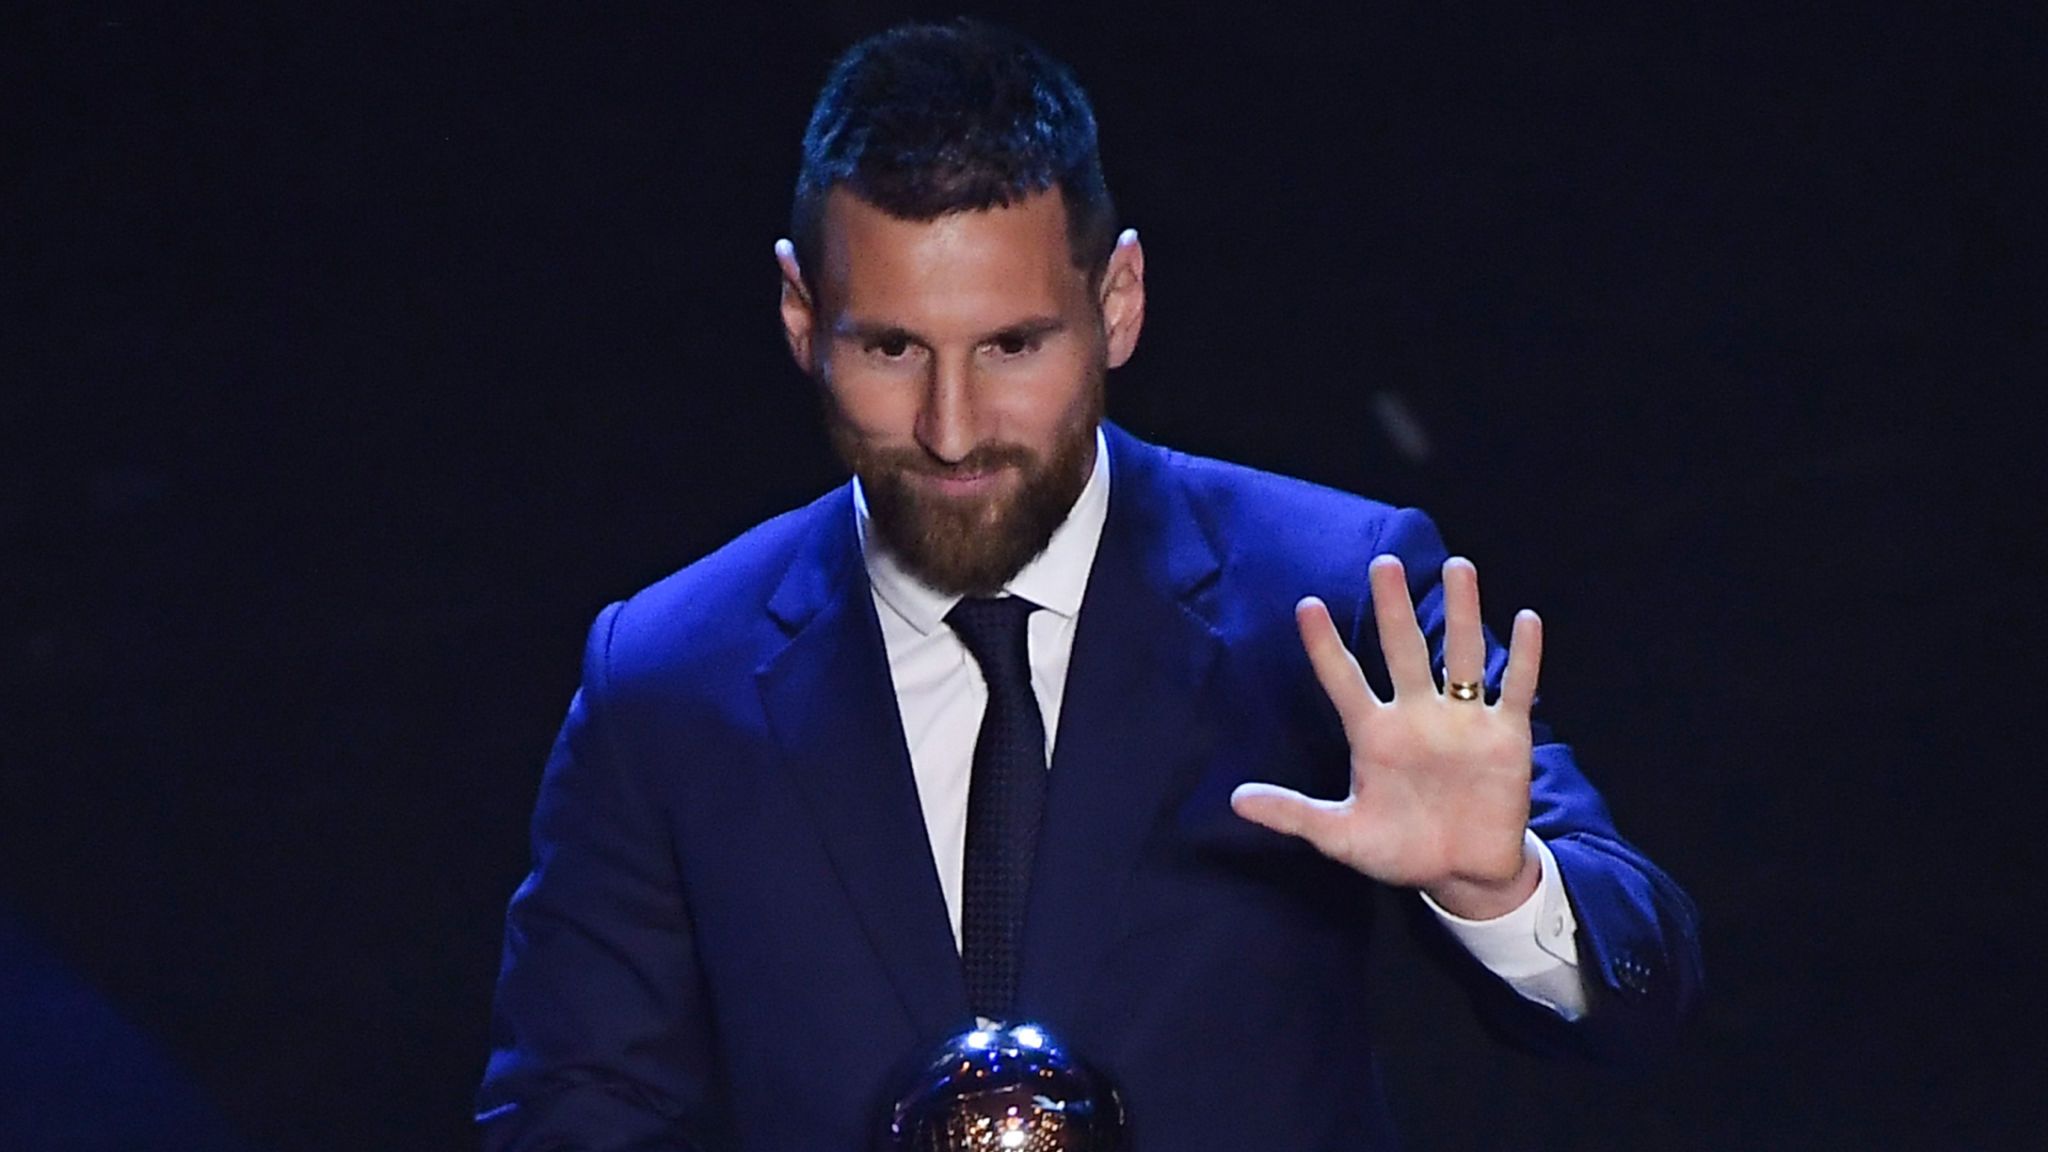 Lionel Messi has been awarded Best FIFA Men's player ahead of Virgil van Dijk and Cristiano Ronaldo